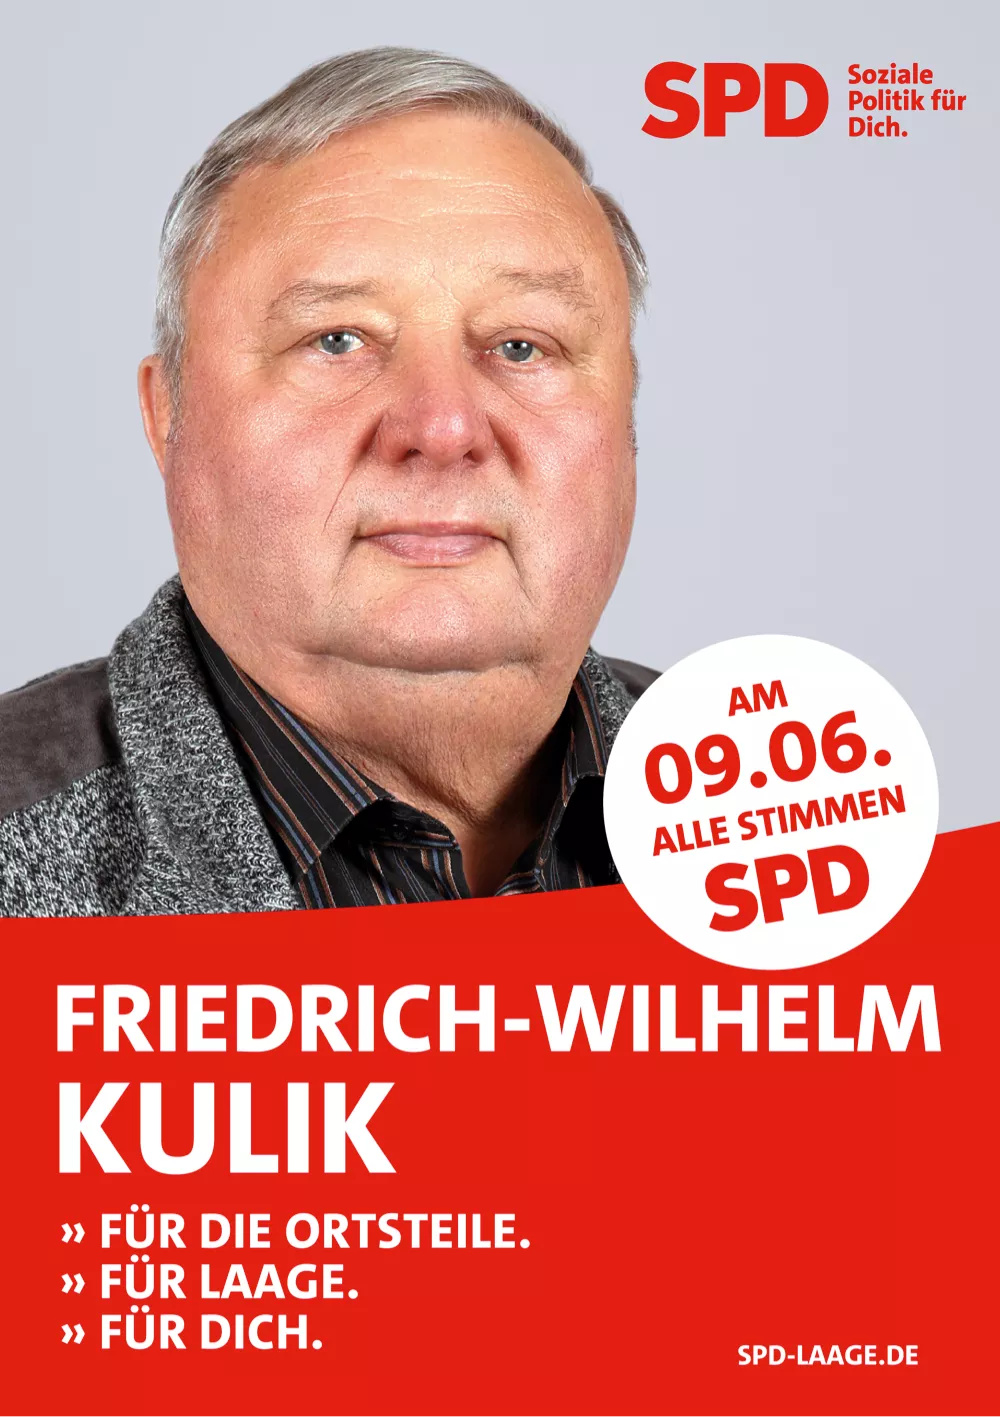 Friedrich-Wilhelm Kulik